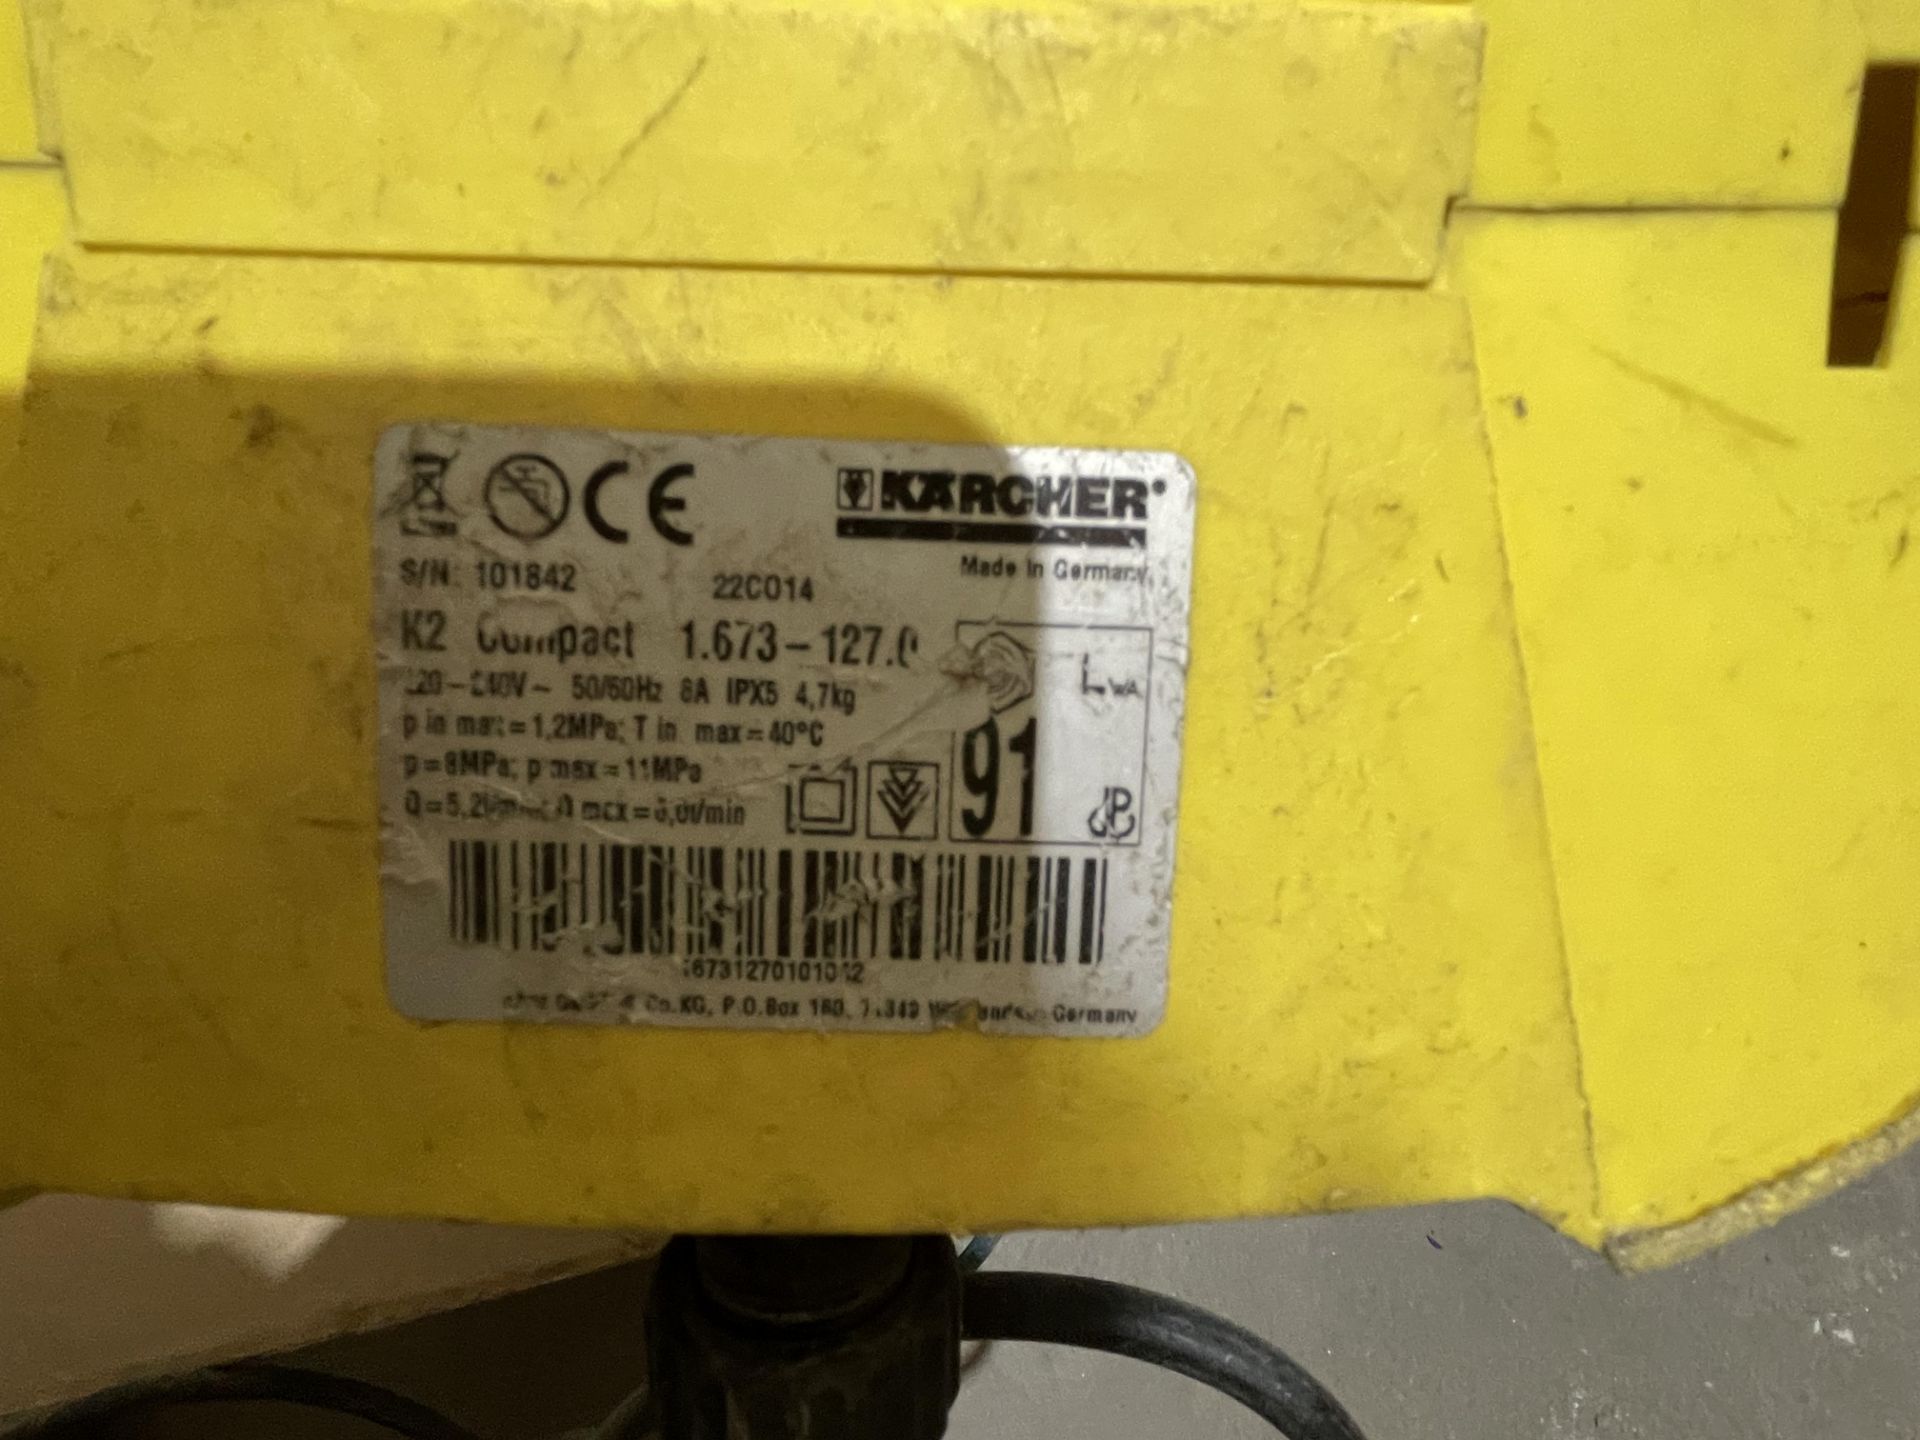 Karcher K2 Compact Pressure Washer S/No. 101842, 240v - Image 3 of 3